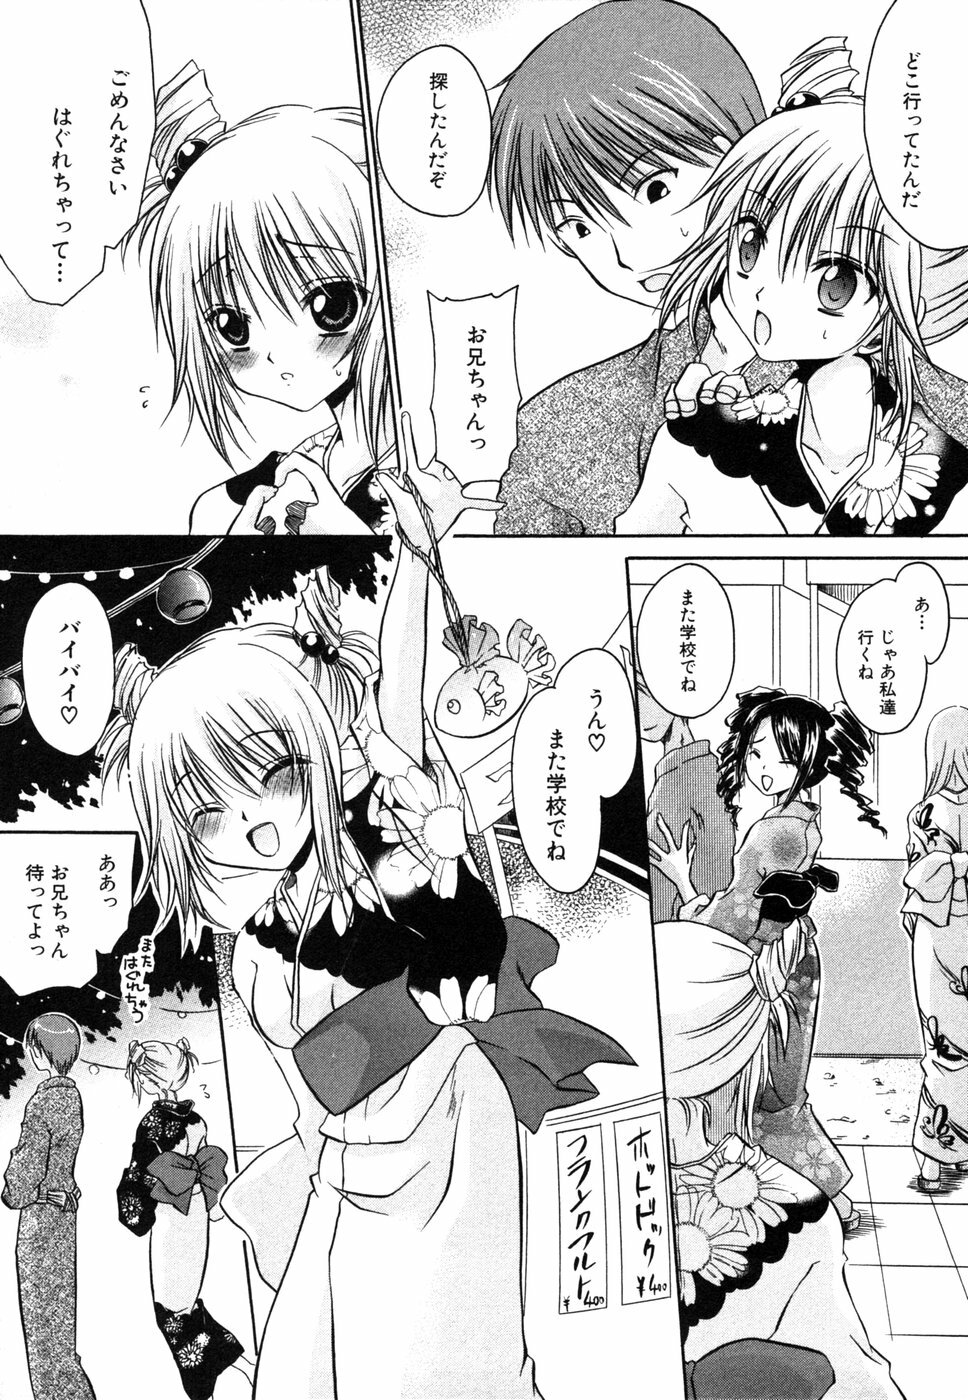 [Anthology] Himitsu no Tobira 5 Kinshin Ai Anthology (The Secret Door) page 8 full